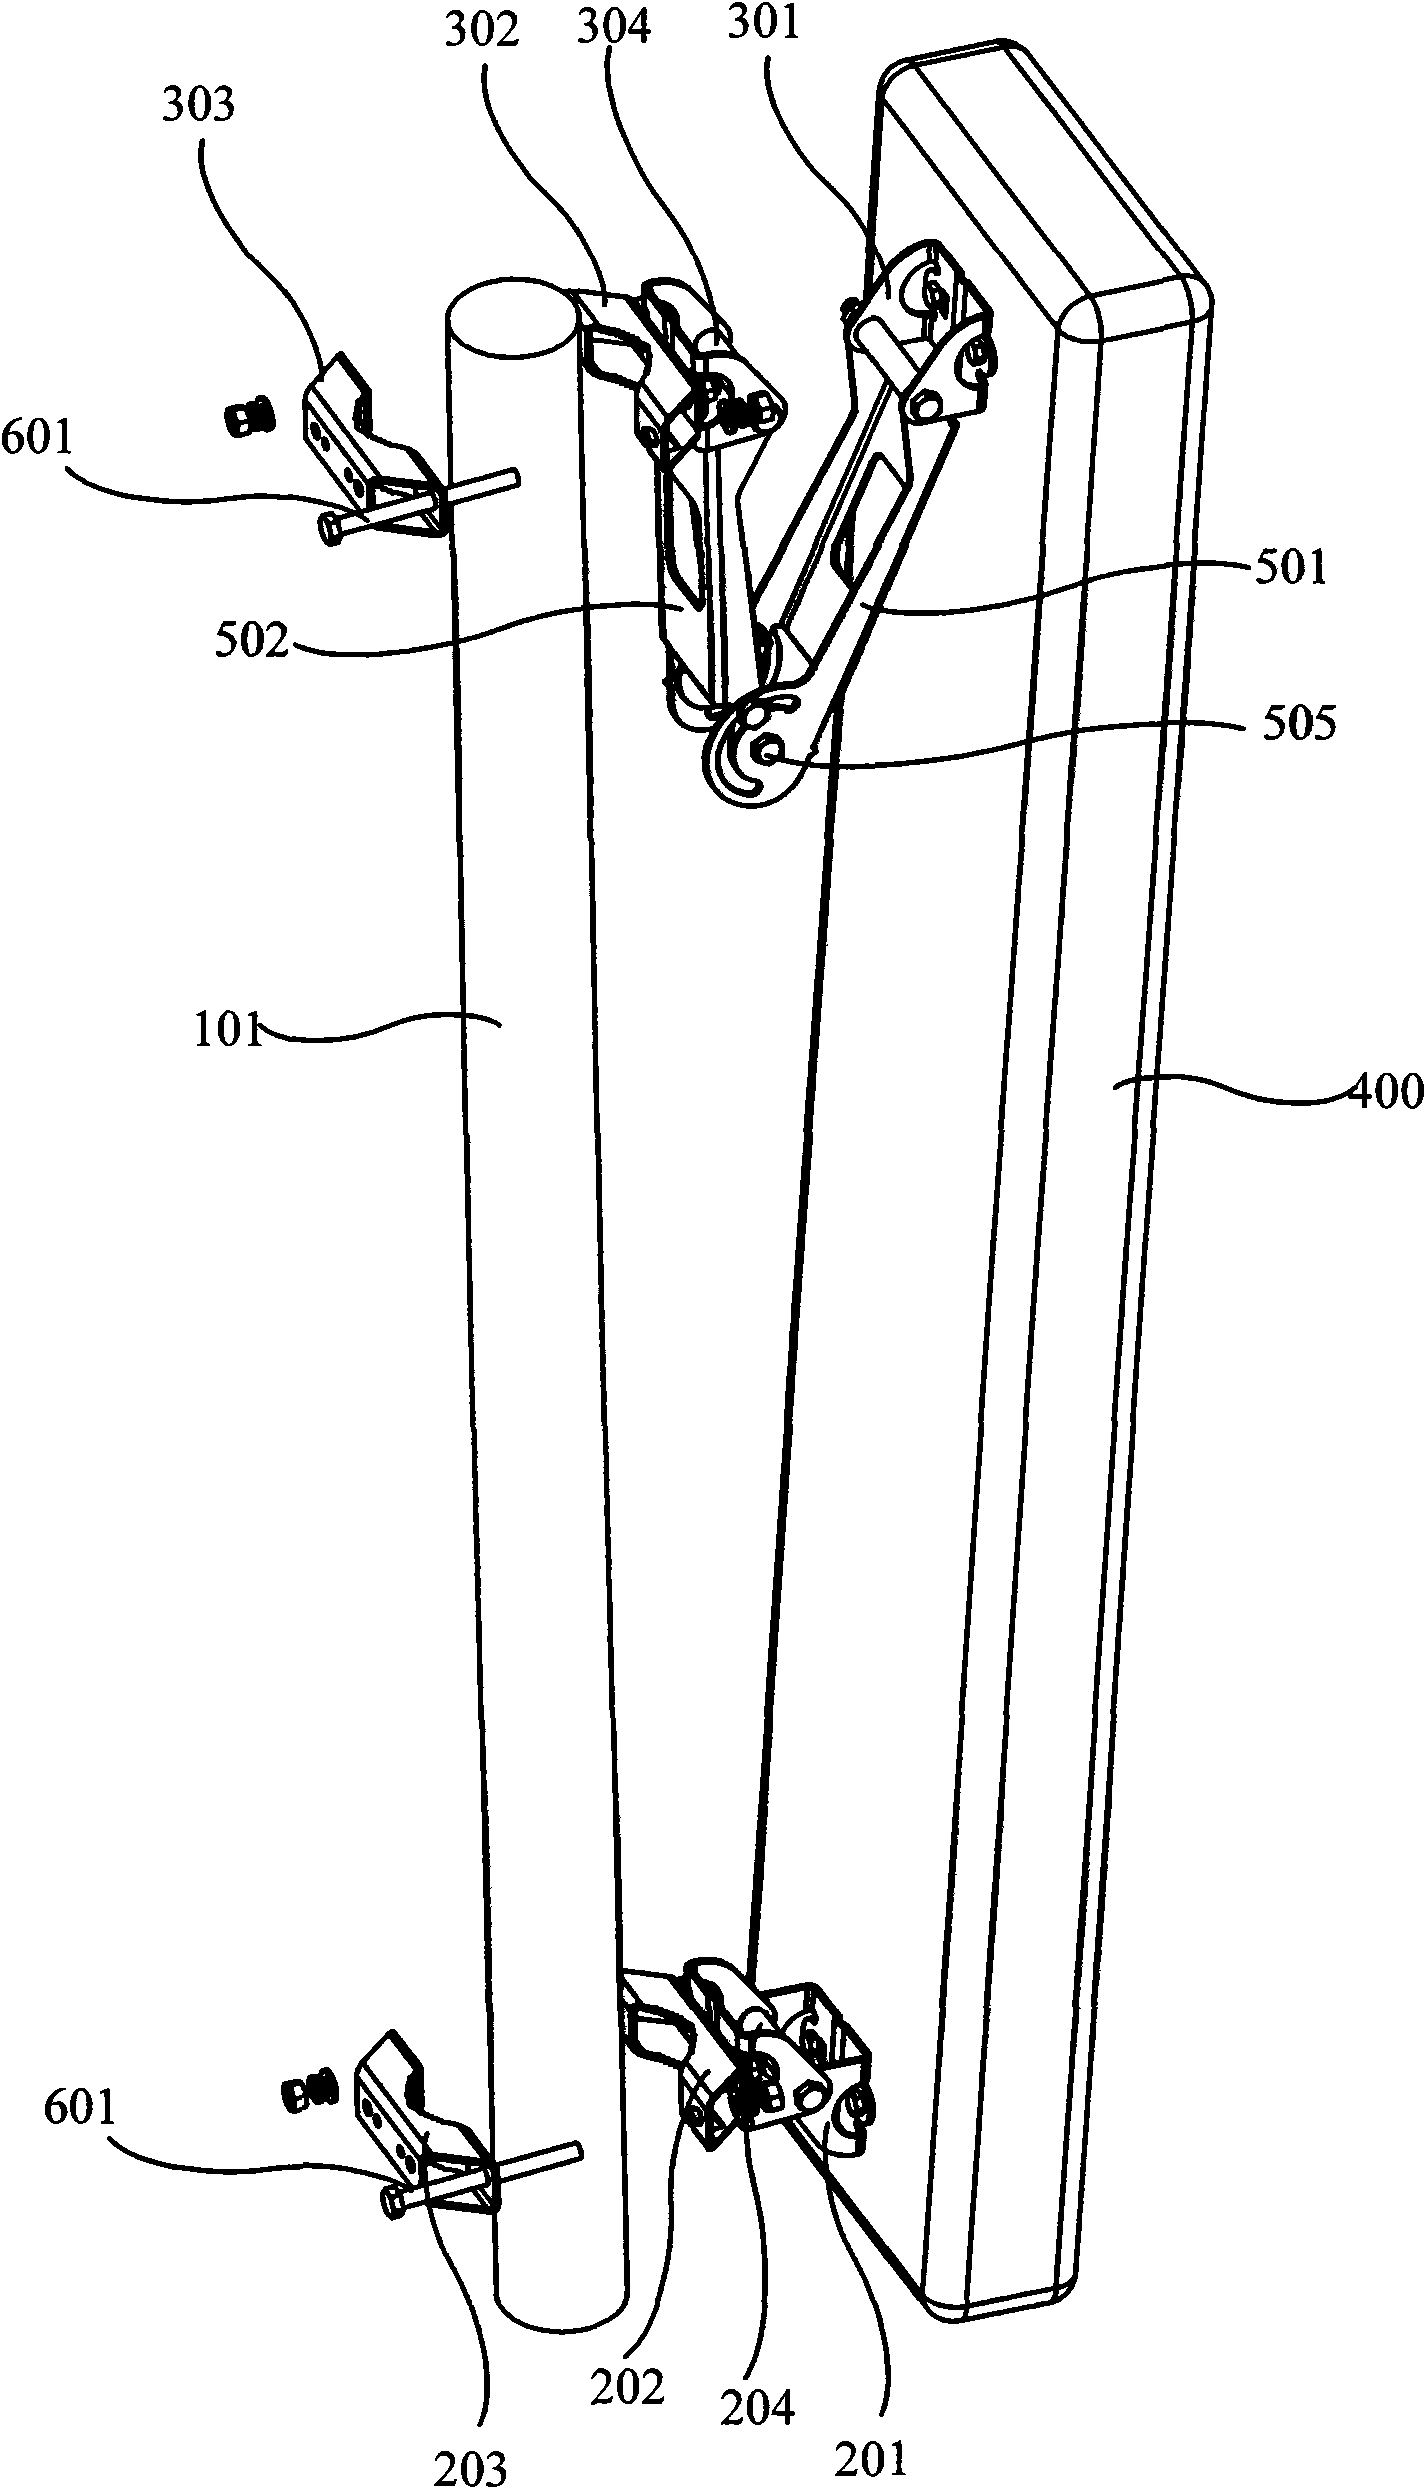 Antenna mounting frame